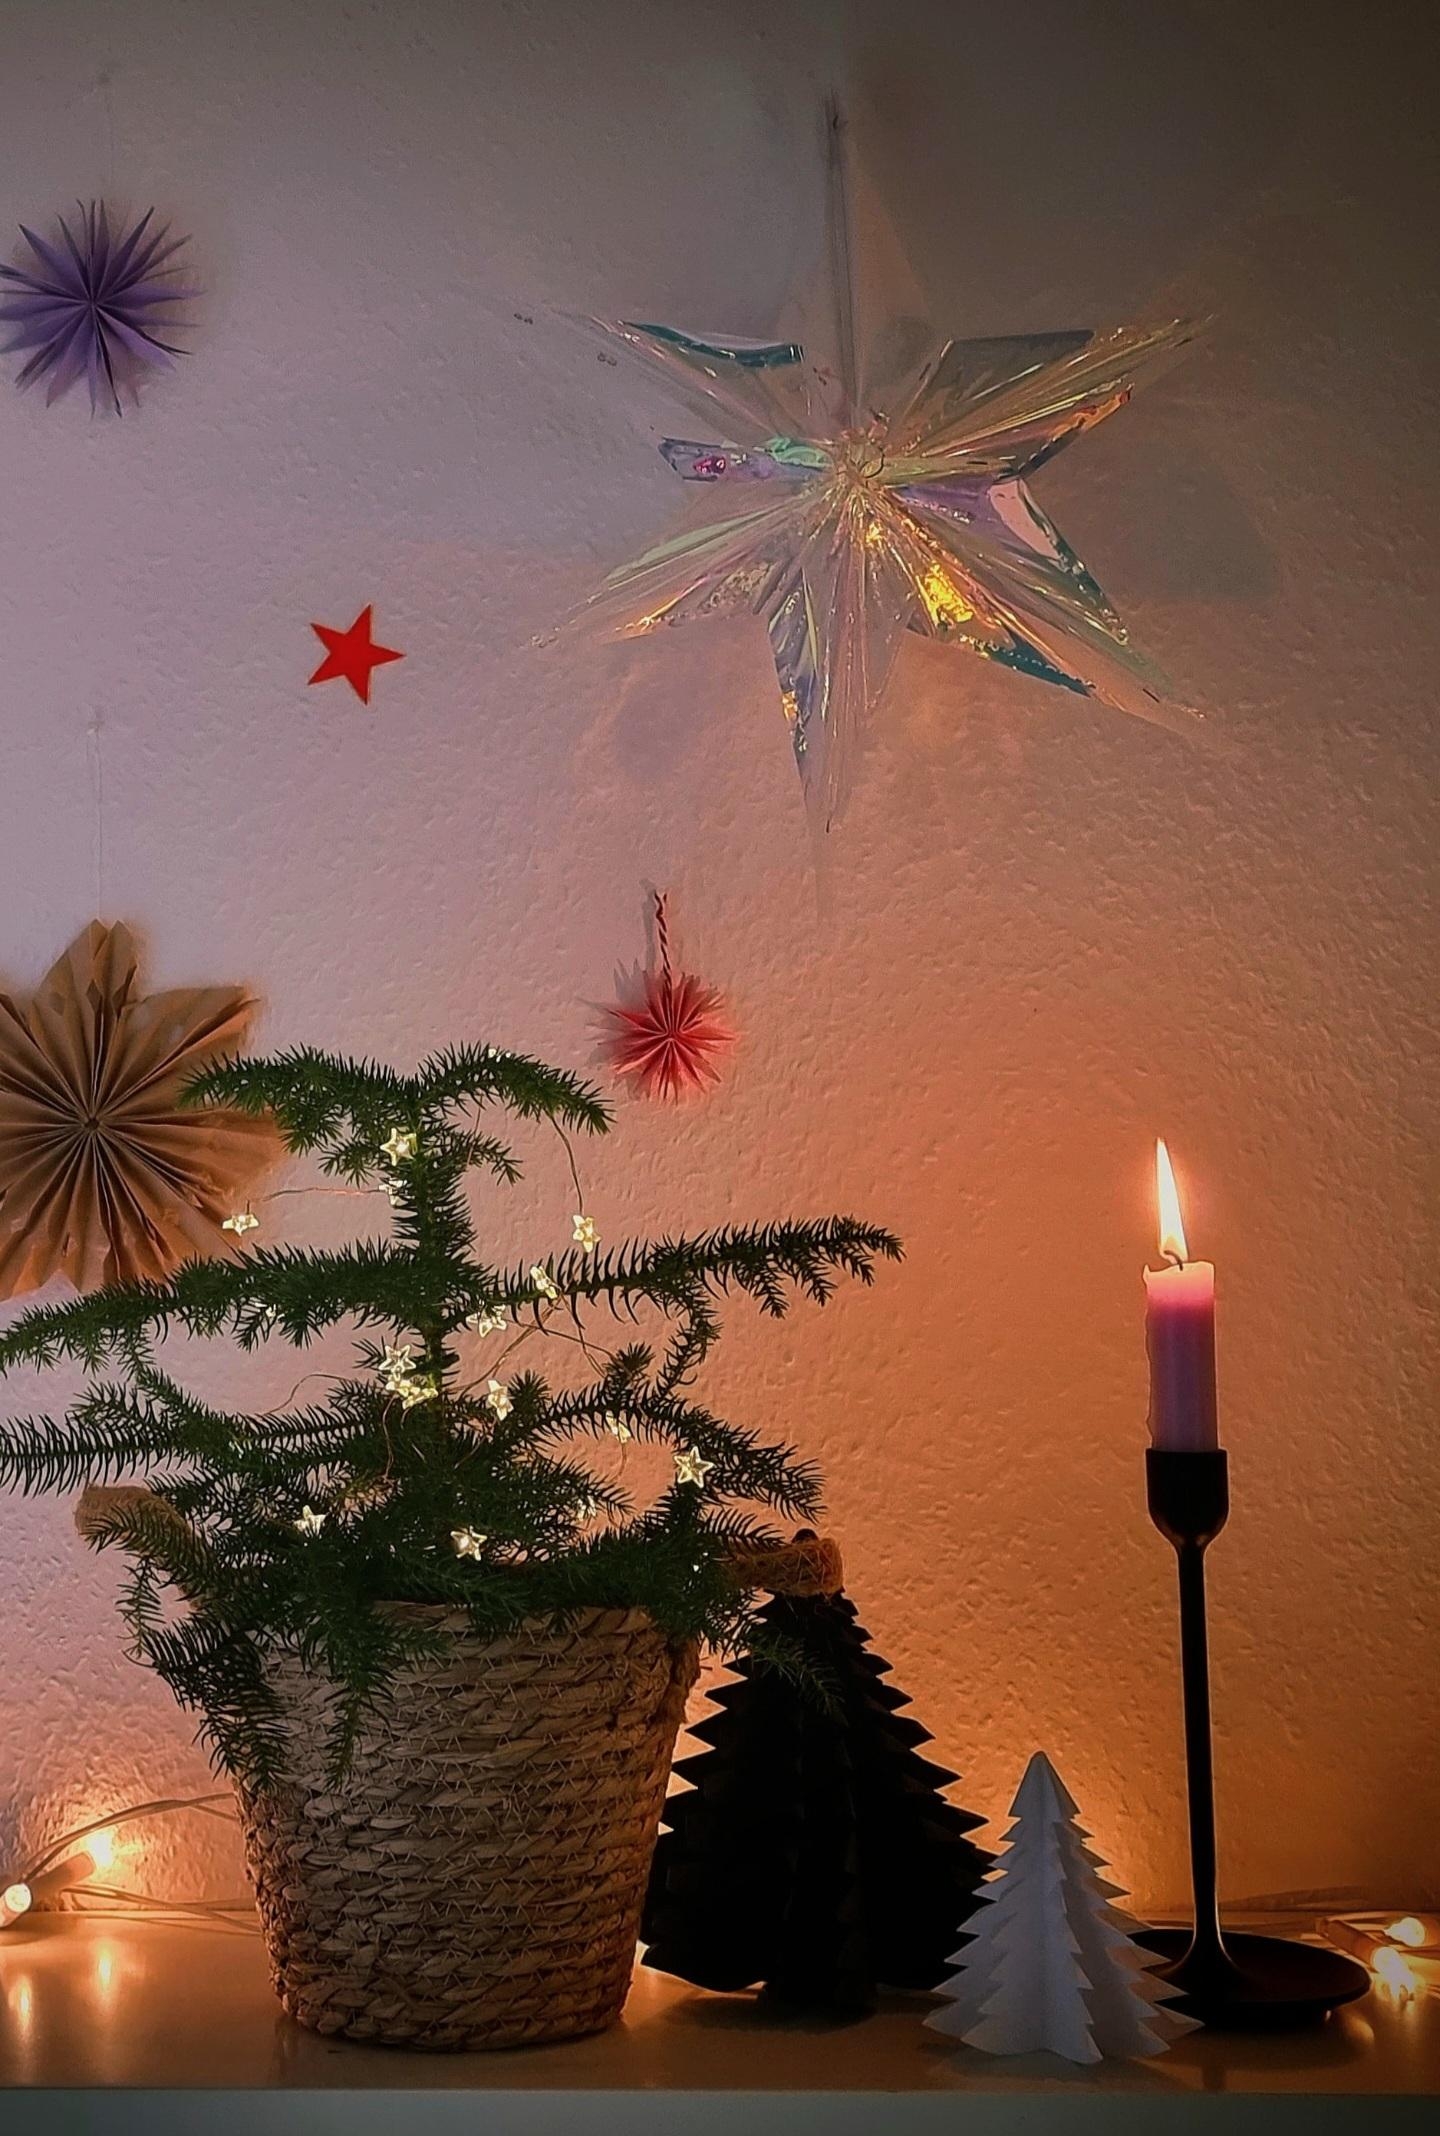 Der Großteil der #Weihnachtsdeko ist geschafft💫 #diy #Papierstern ➕️ #Tannenbaum #cozytime #Wohnzimmer #hygge #xmas #Weihnachten #christmastime 